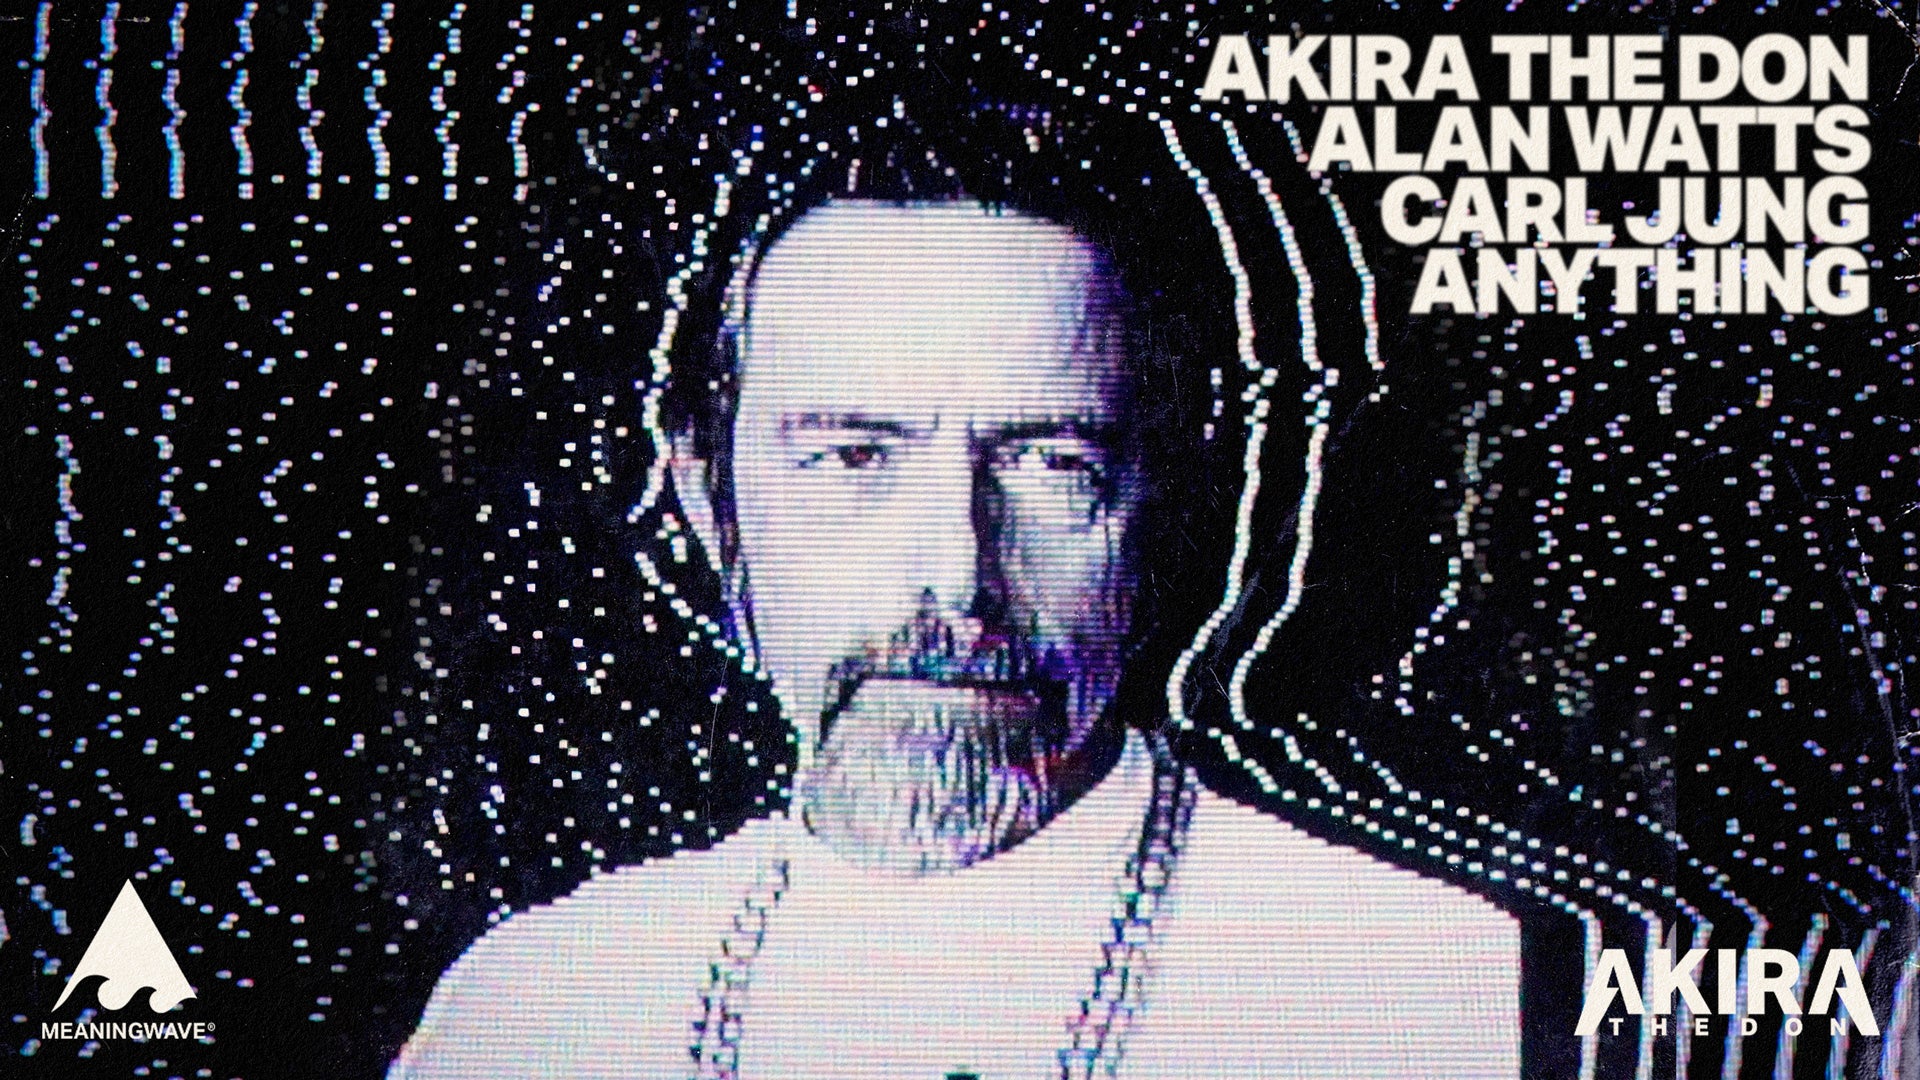 Alan Watts x Carl Jung x Akira The Don - ANYTHING | Music Video